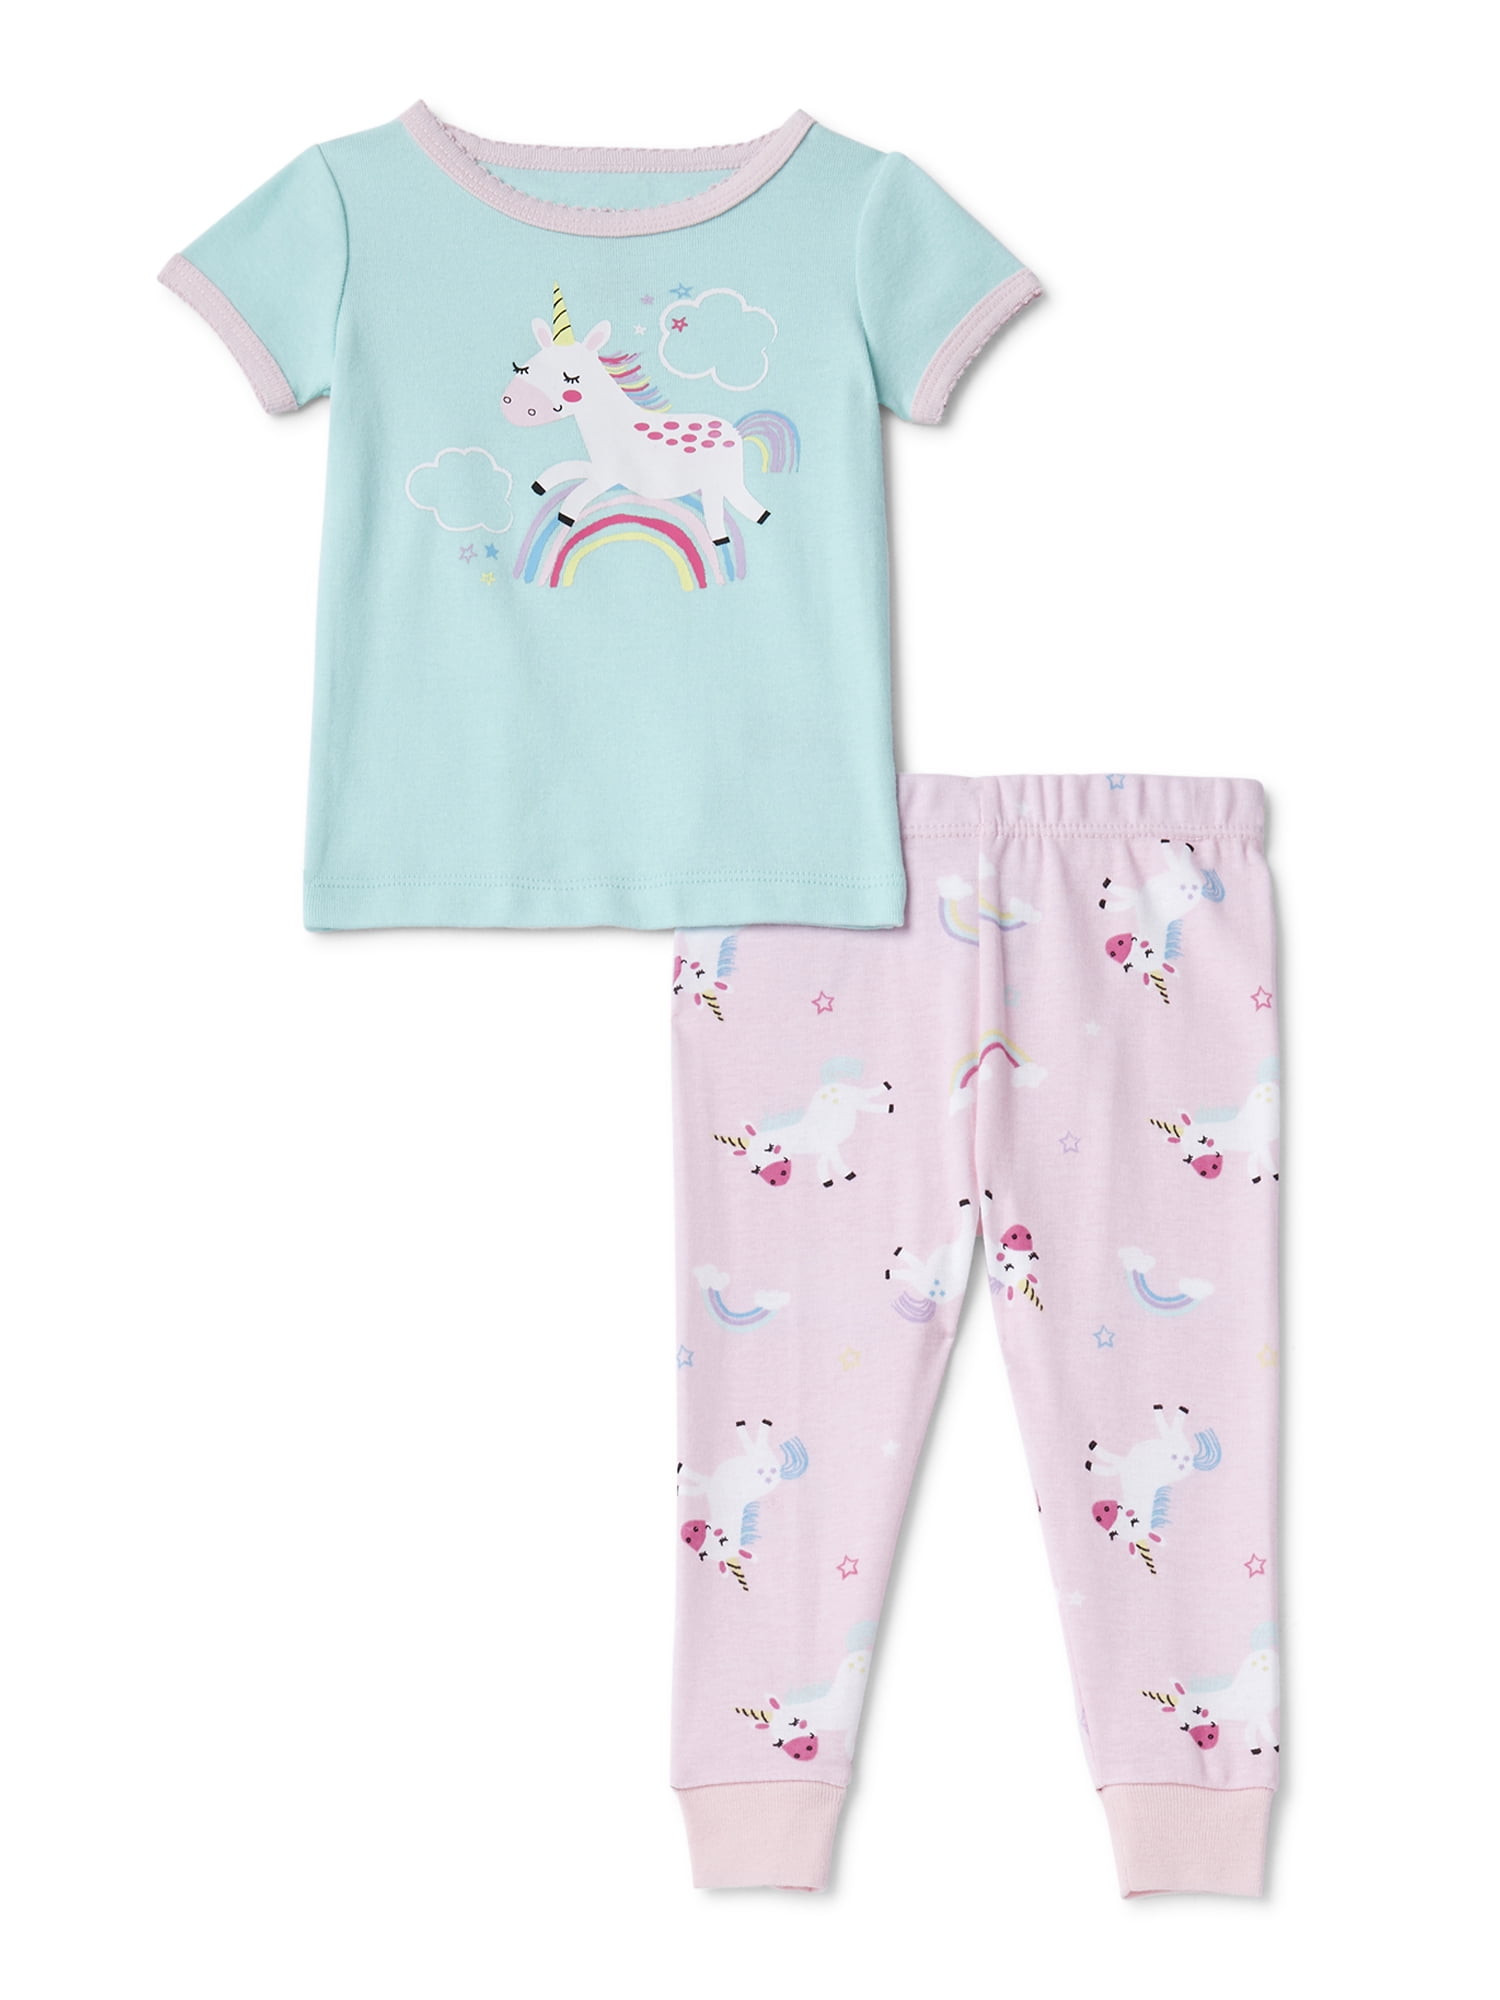 Details about   Lightning Bug Toddler Girls 2Pc Unicorn Pajama Set Size 2T 